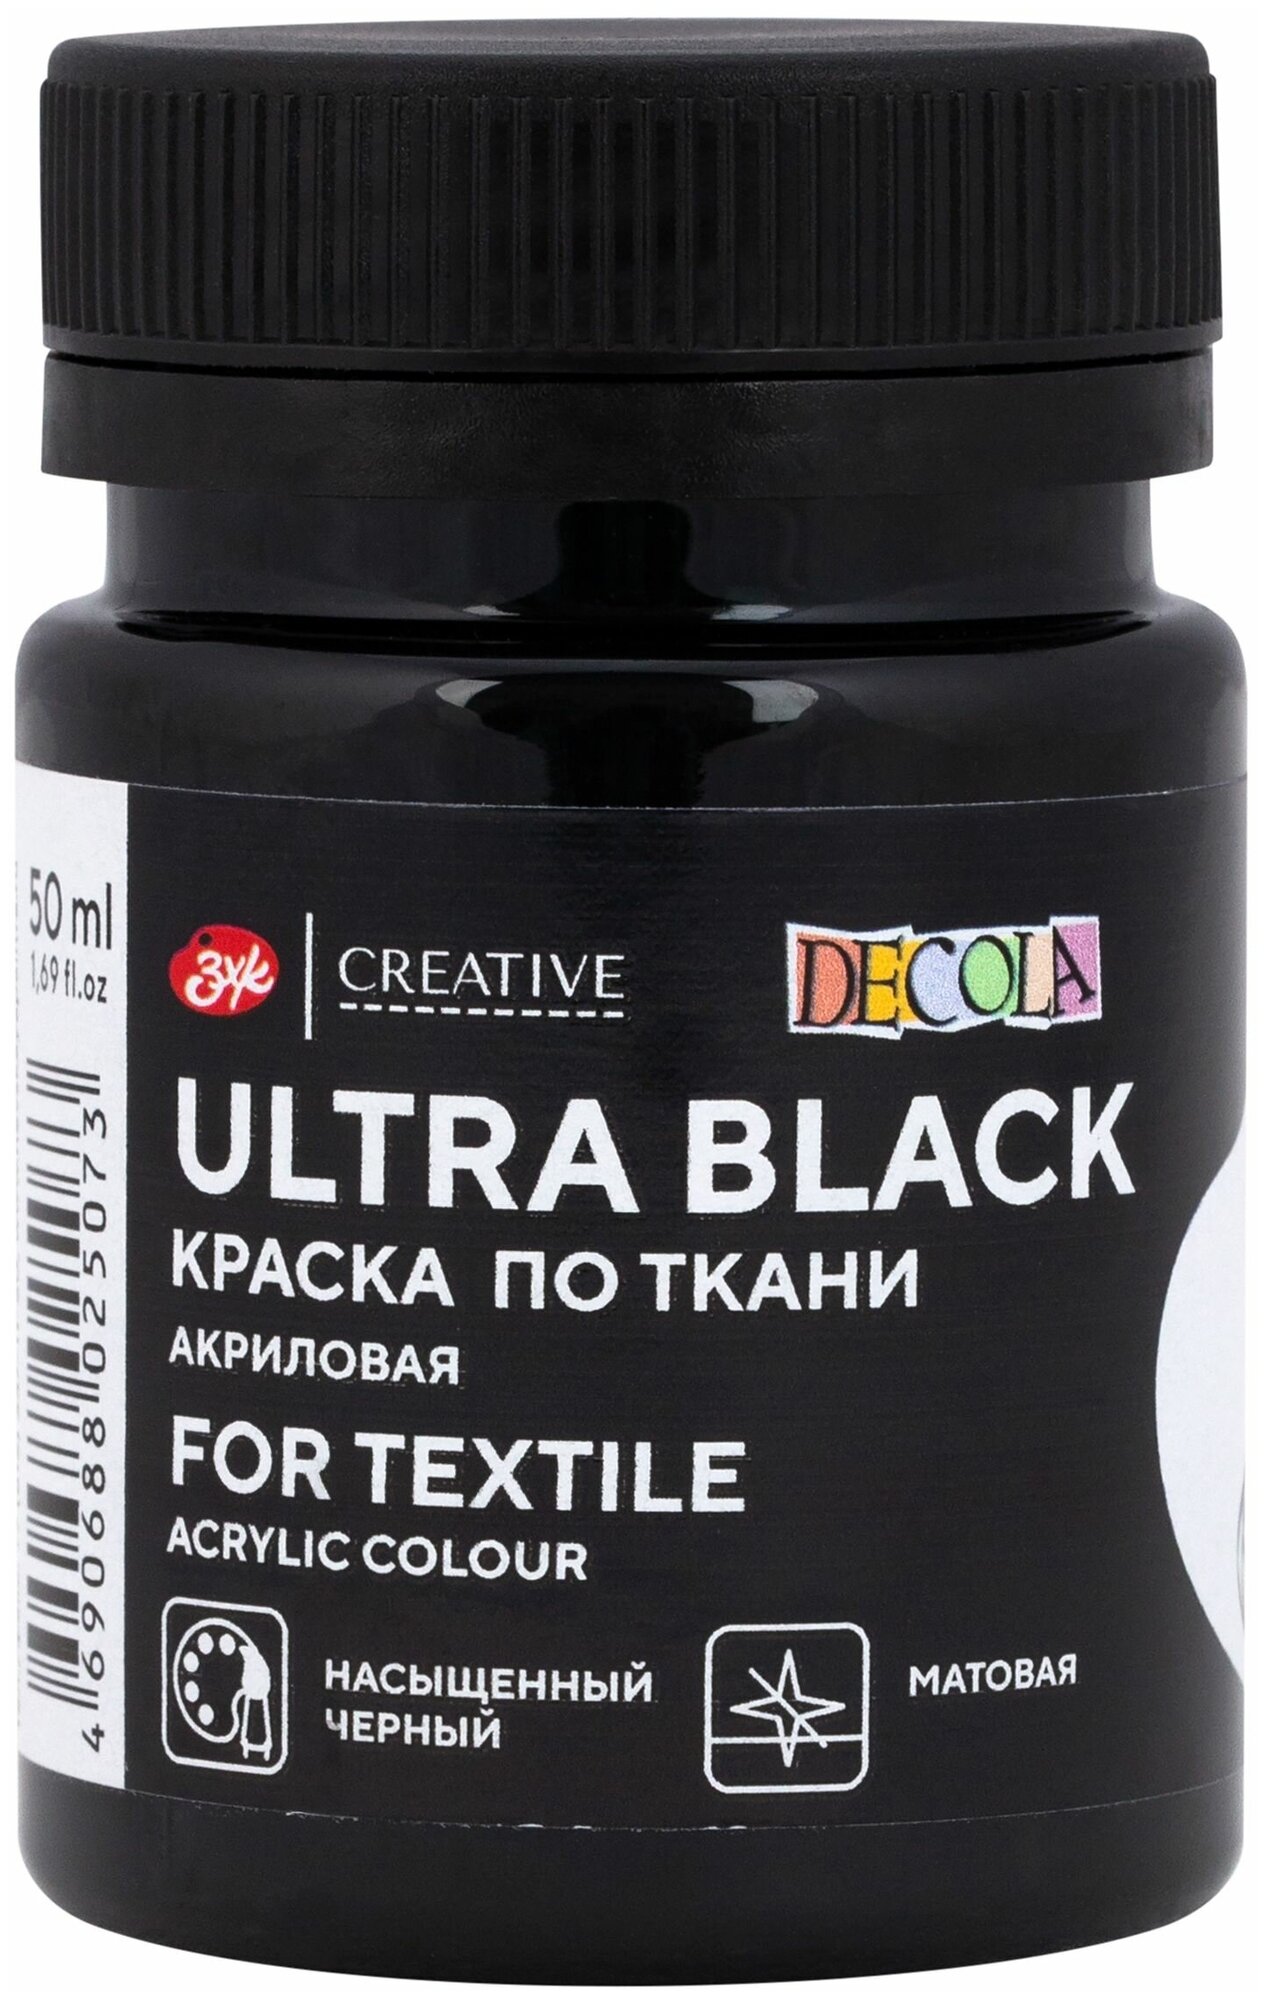 Краска акриловая для рисования по ткани Невская палитра DECOLA 50 мл ультра чёрная